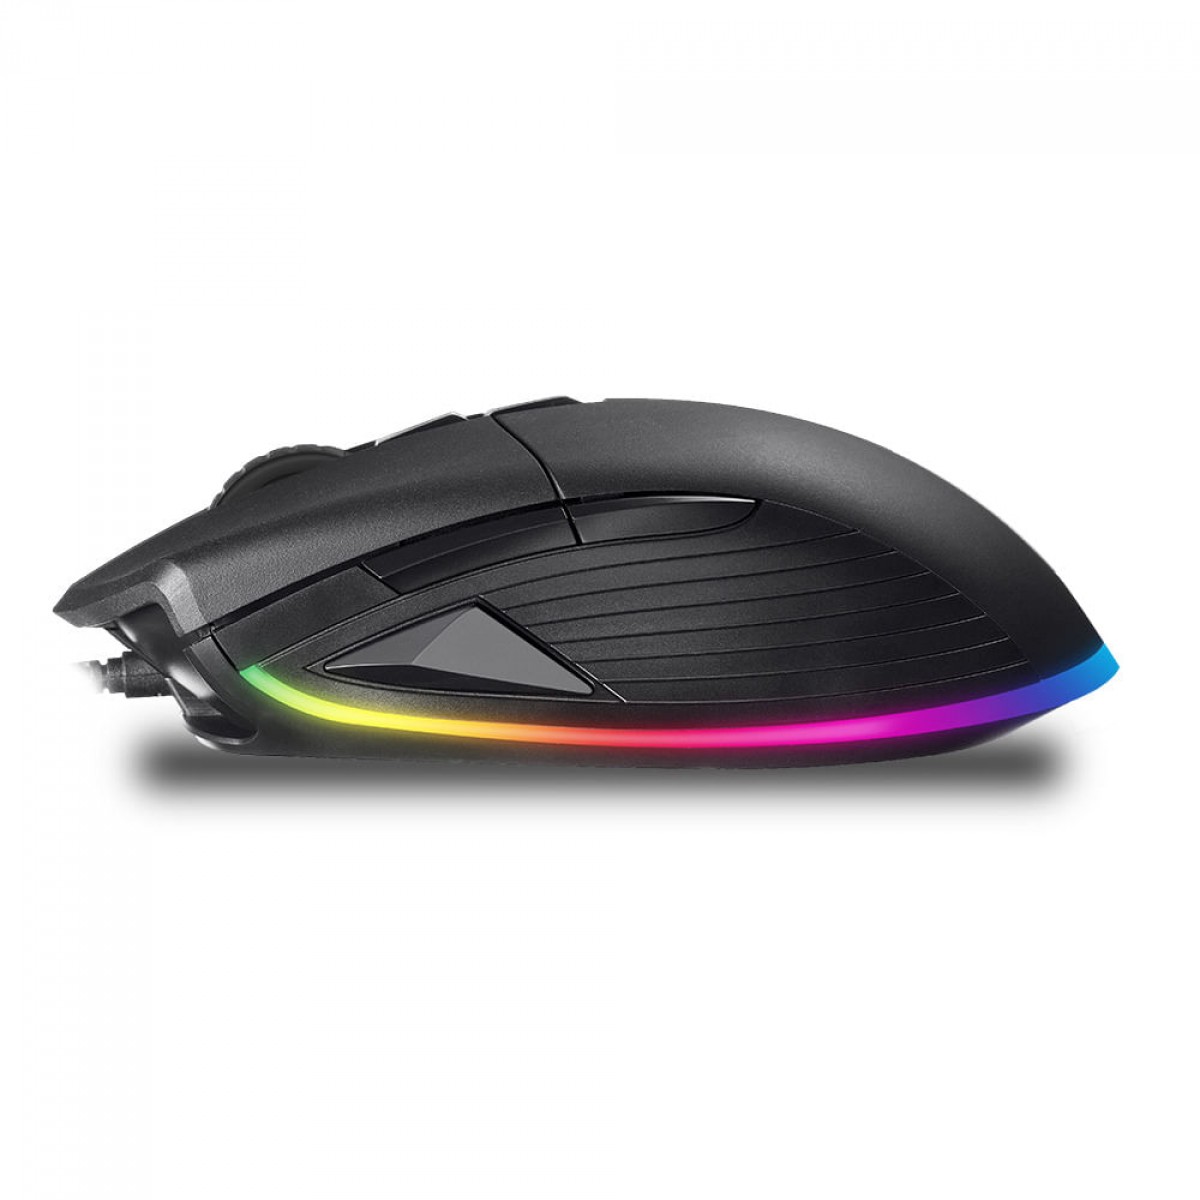 Mouse Gamer Dazz Kirata Ascendent RGB 12400 DPI, Black, 624632